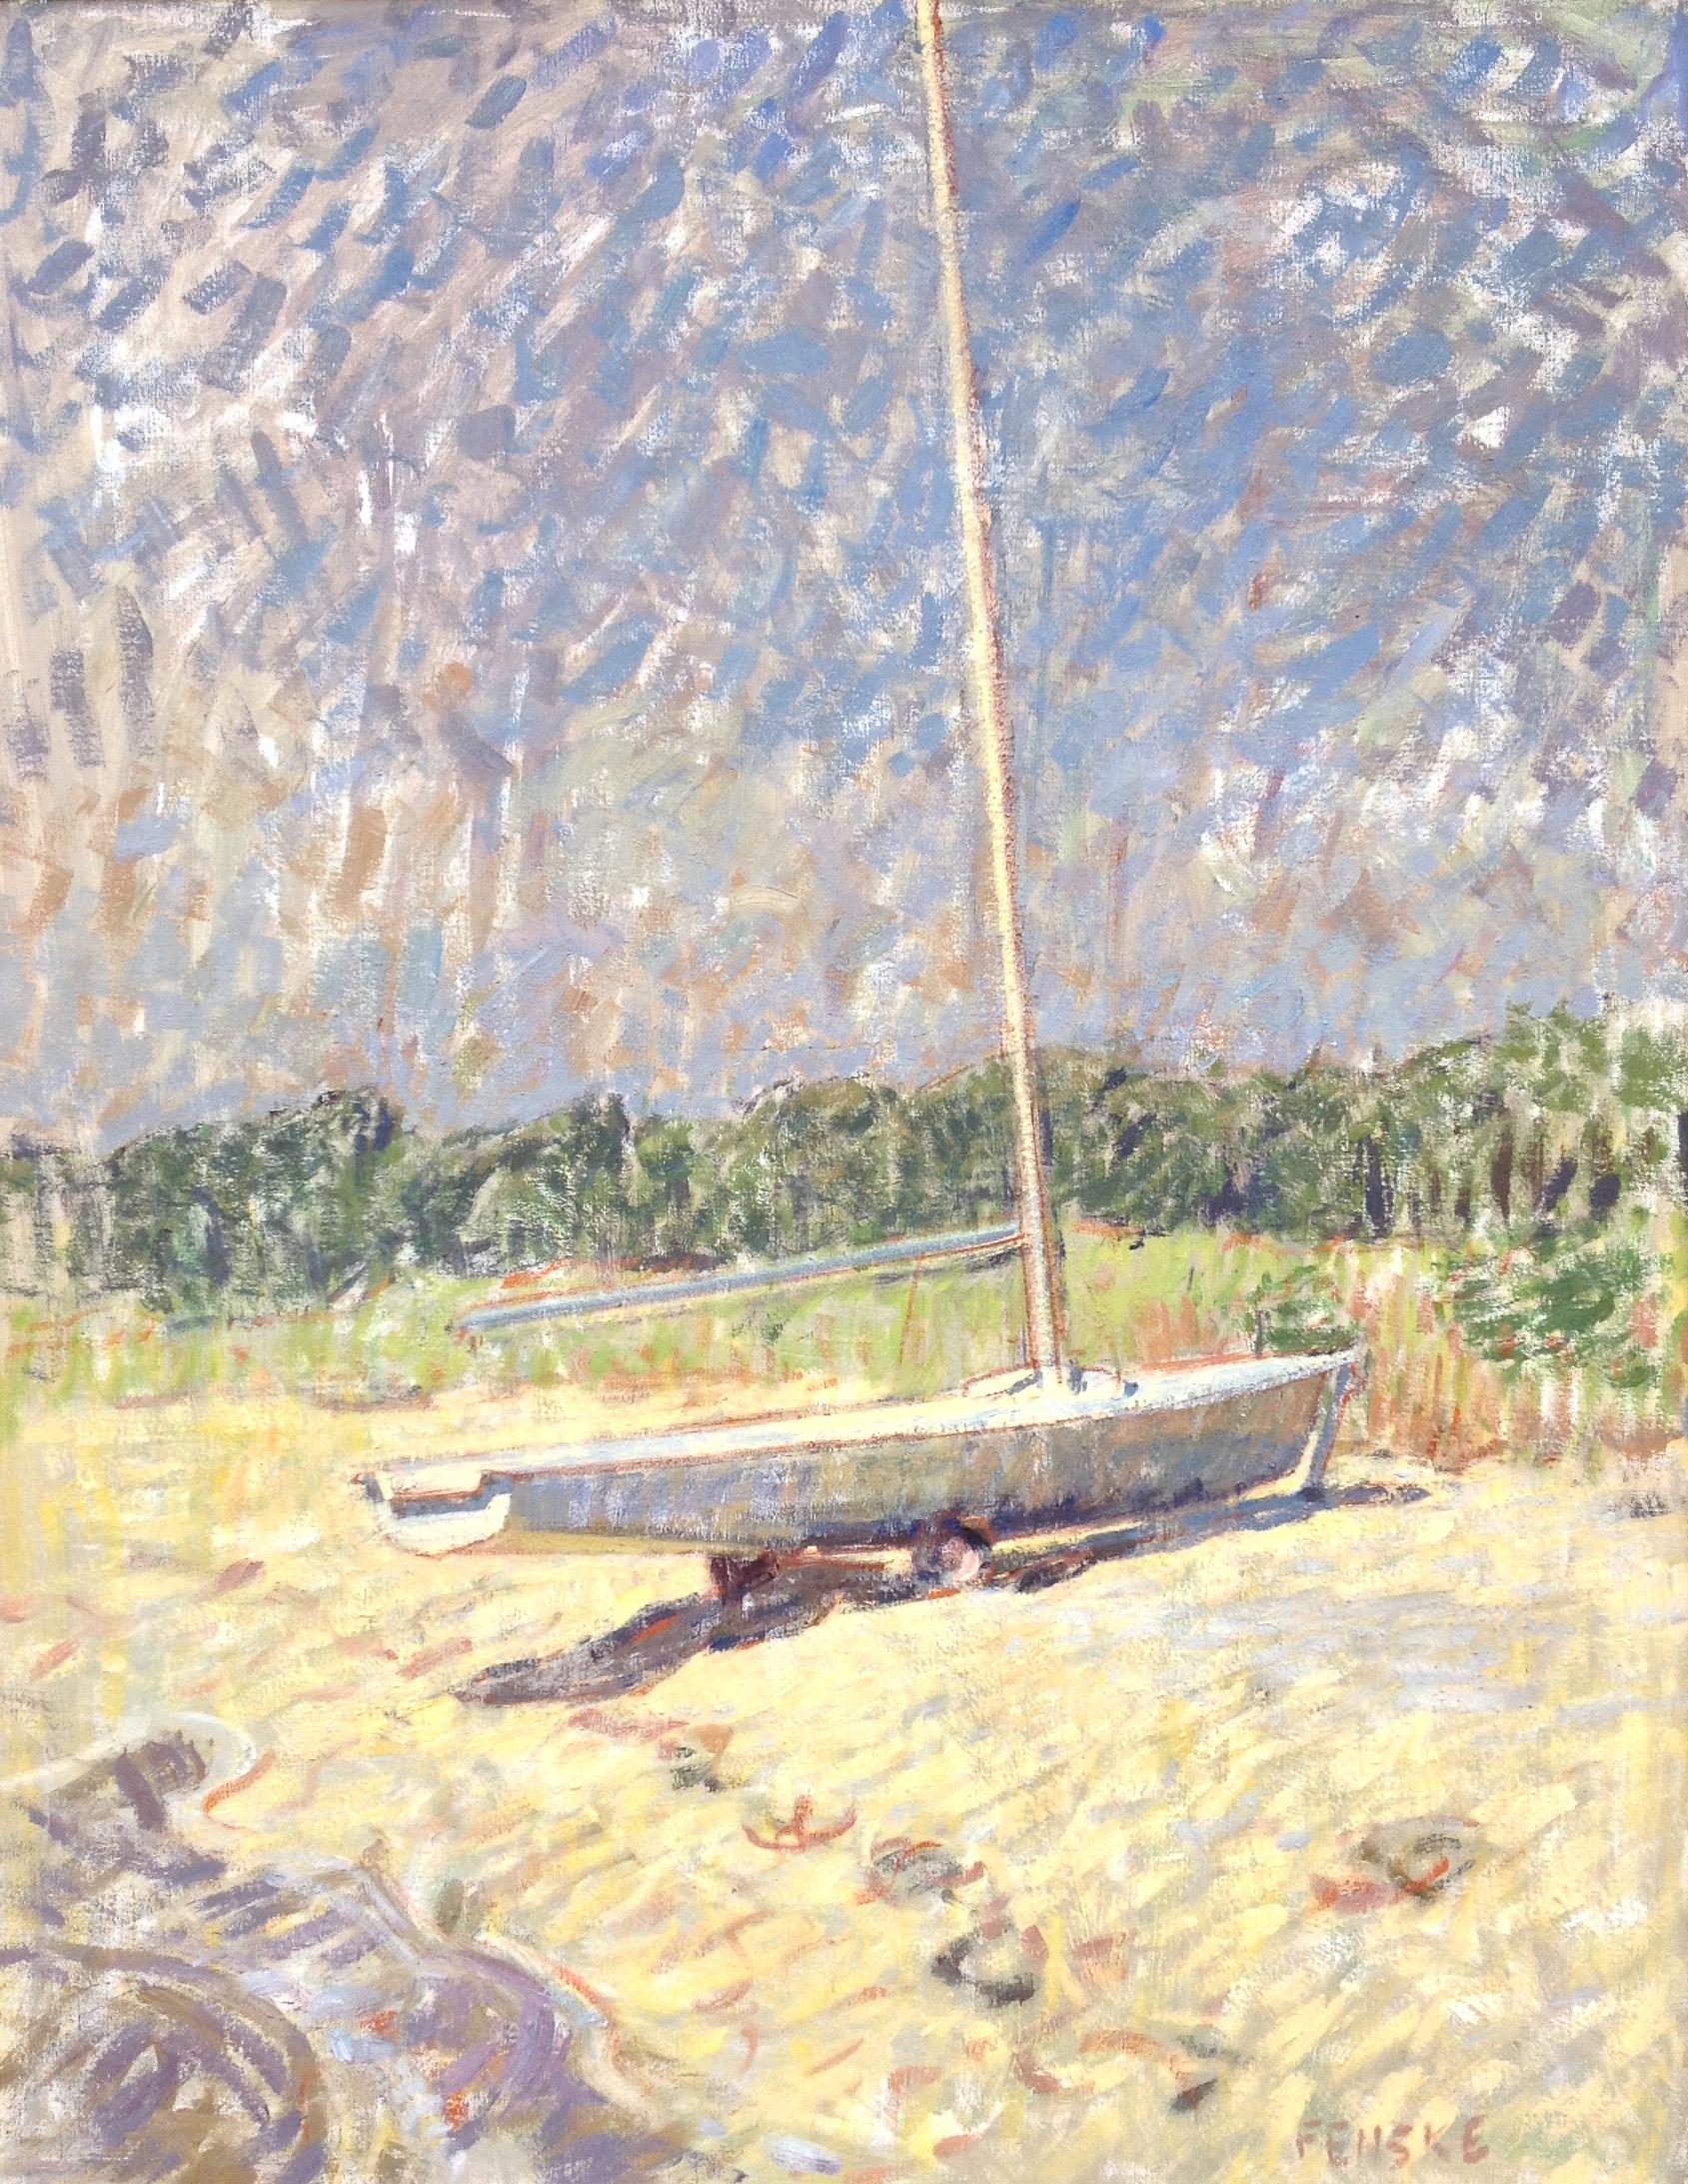 "Segelboot" zeitgenössische impressionistische Ölgemälde von Boot am Strand, Sommer